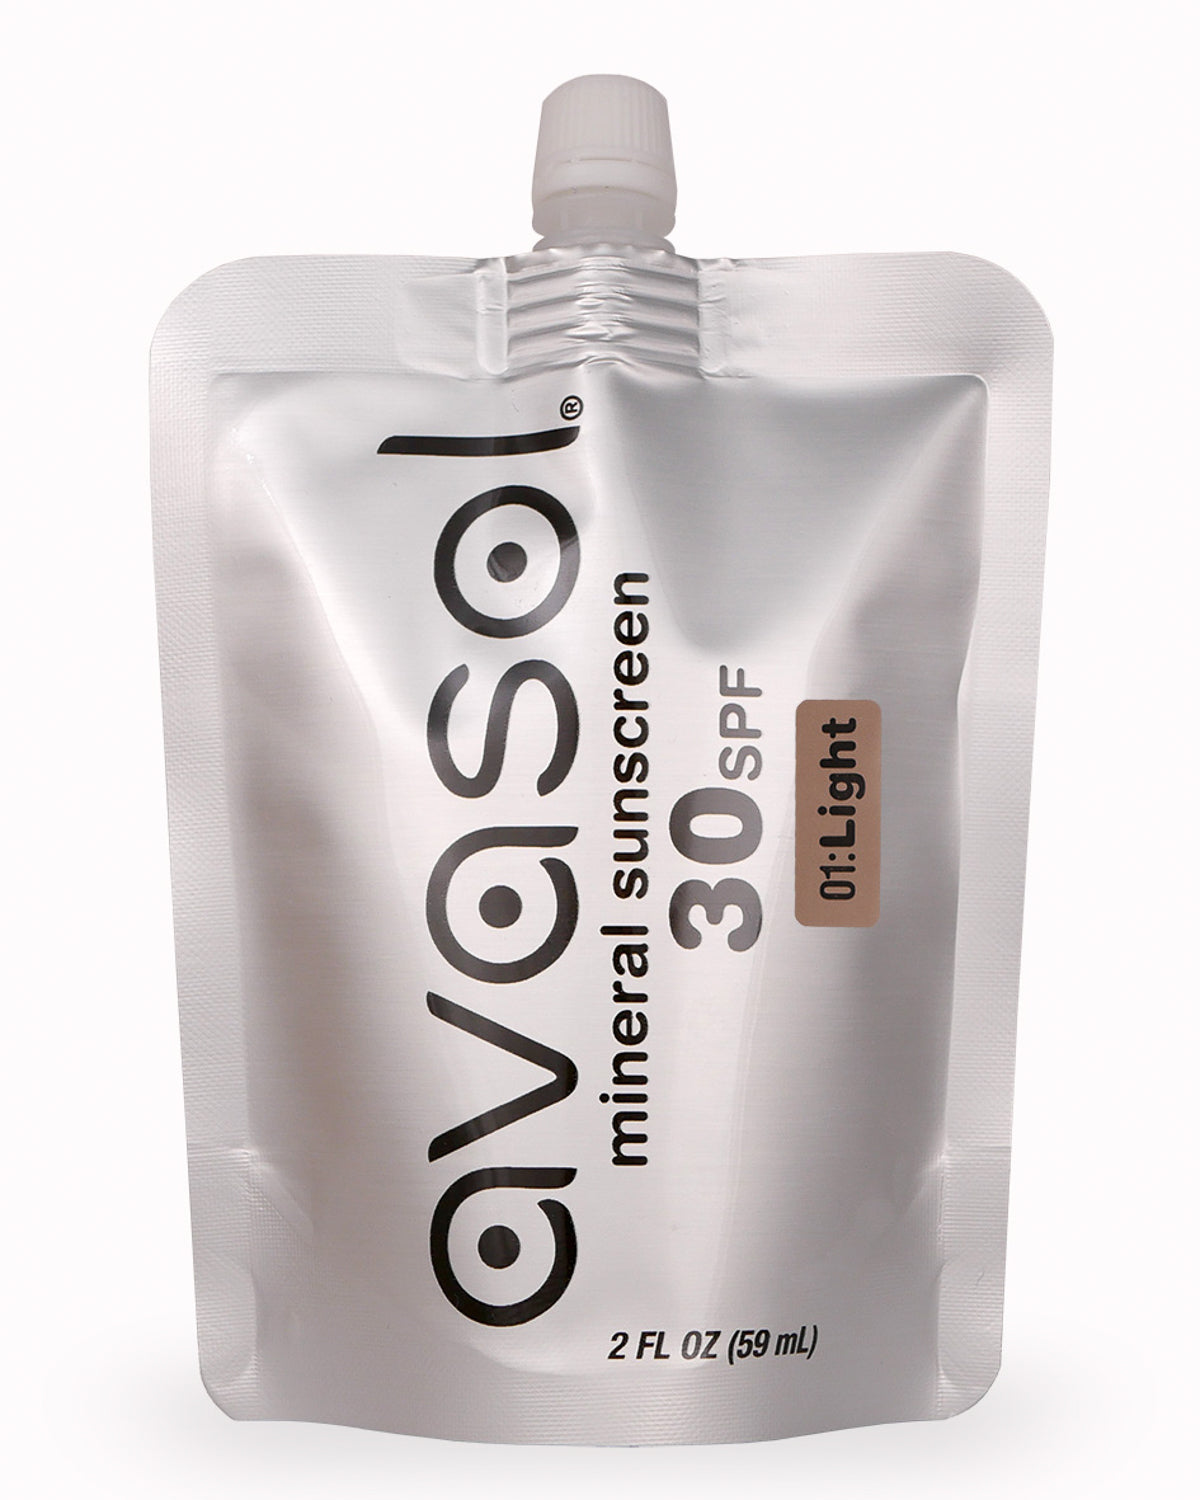 Avasol defense cream pouch SPF 30 mineral sunscreen surf skincare